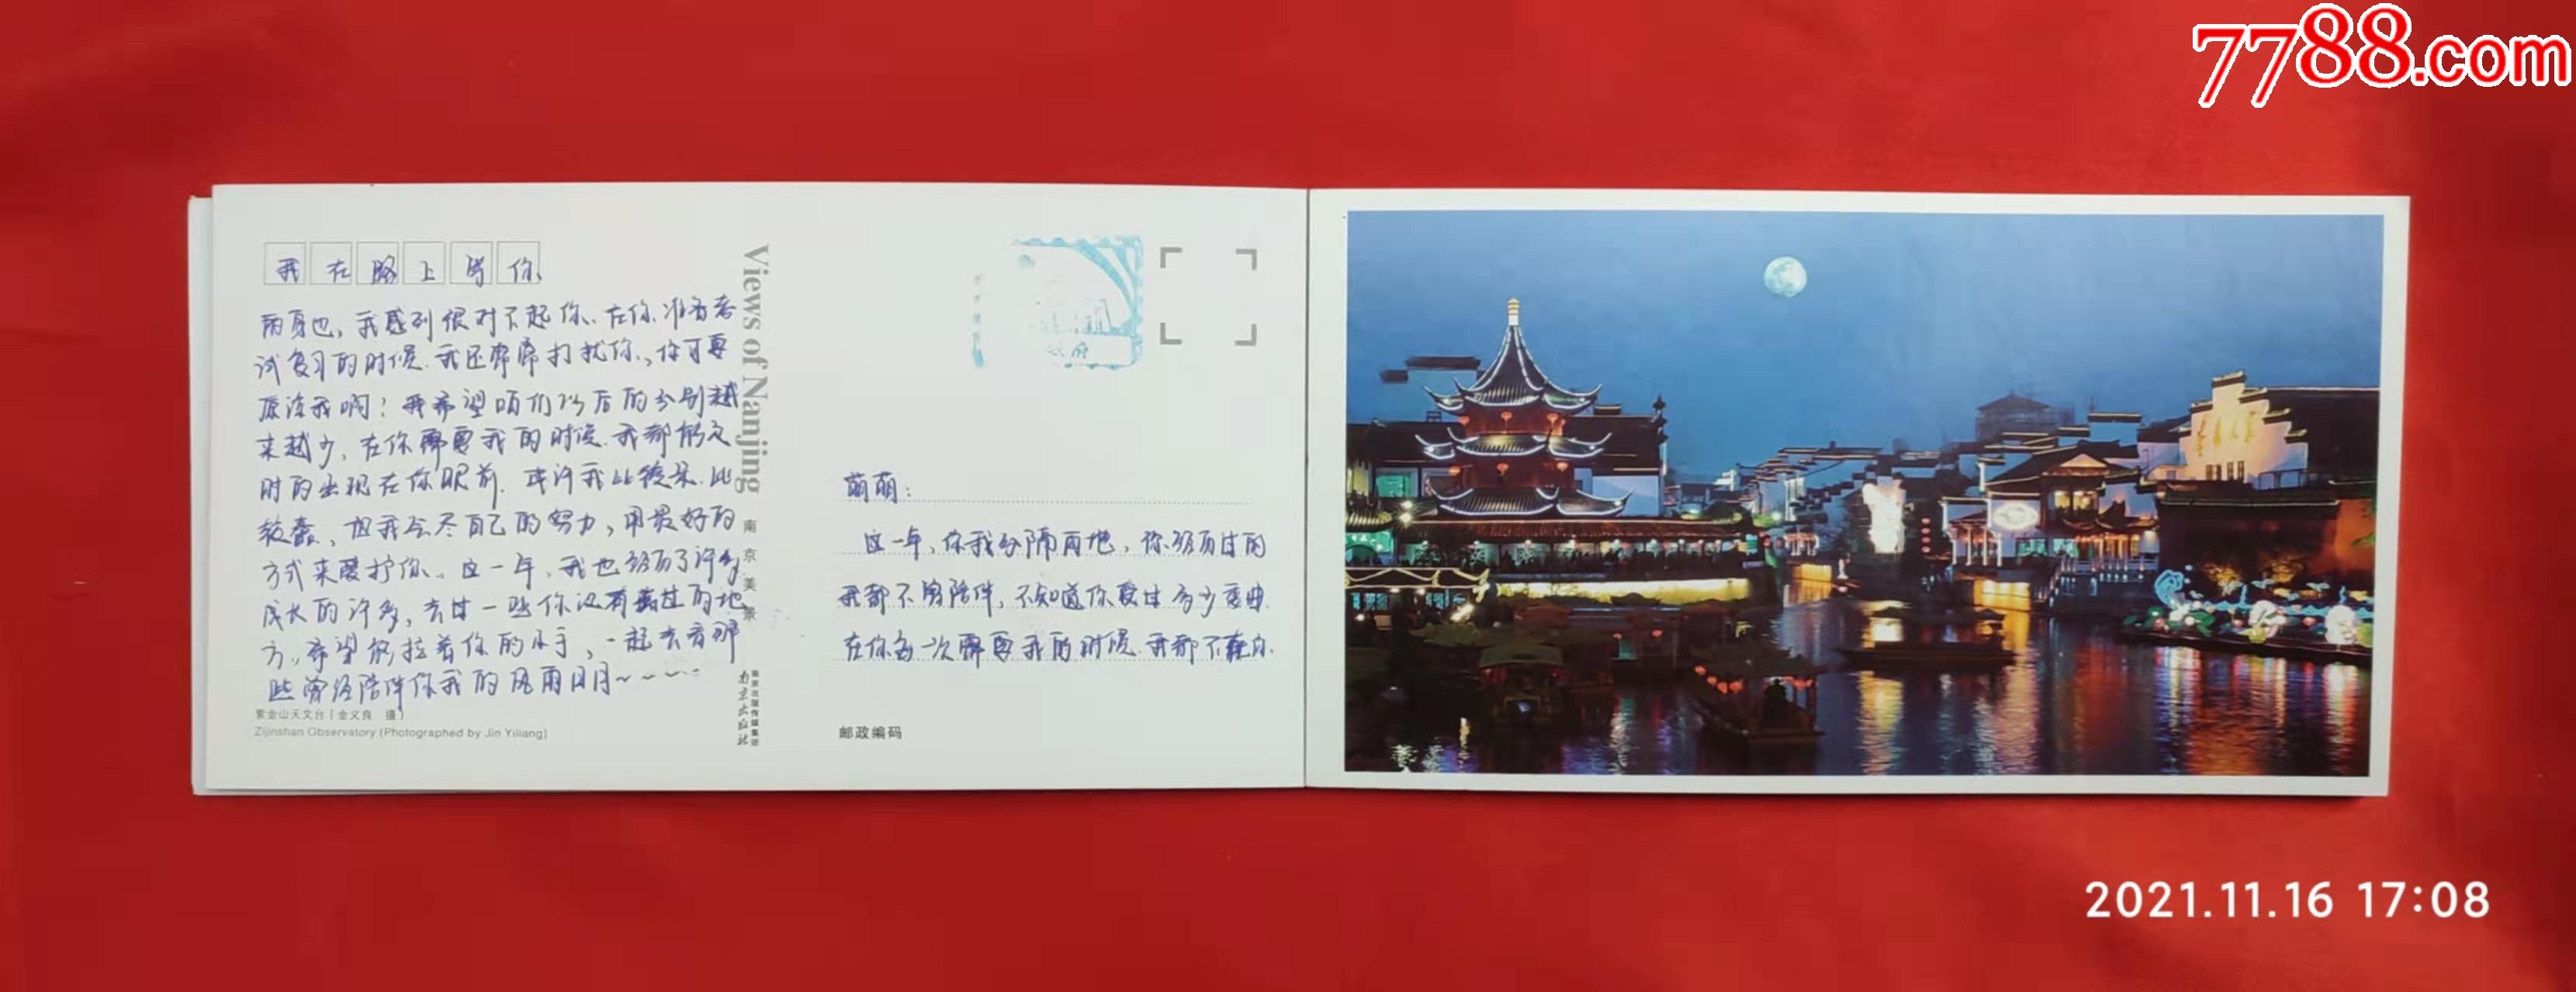 南京名胜古迹明信片图片